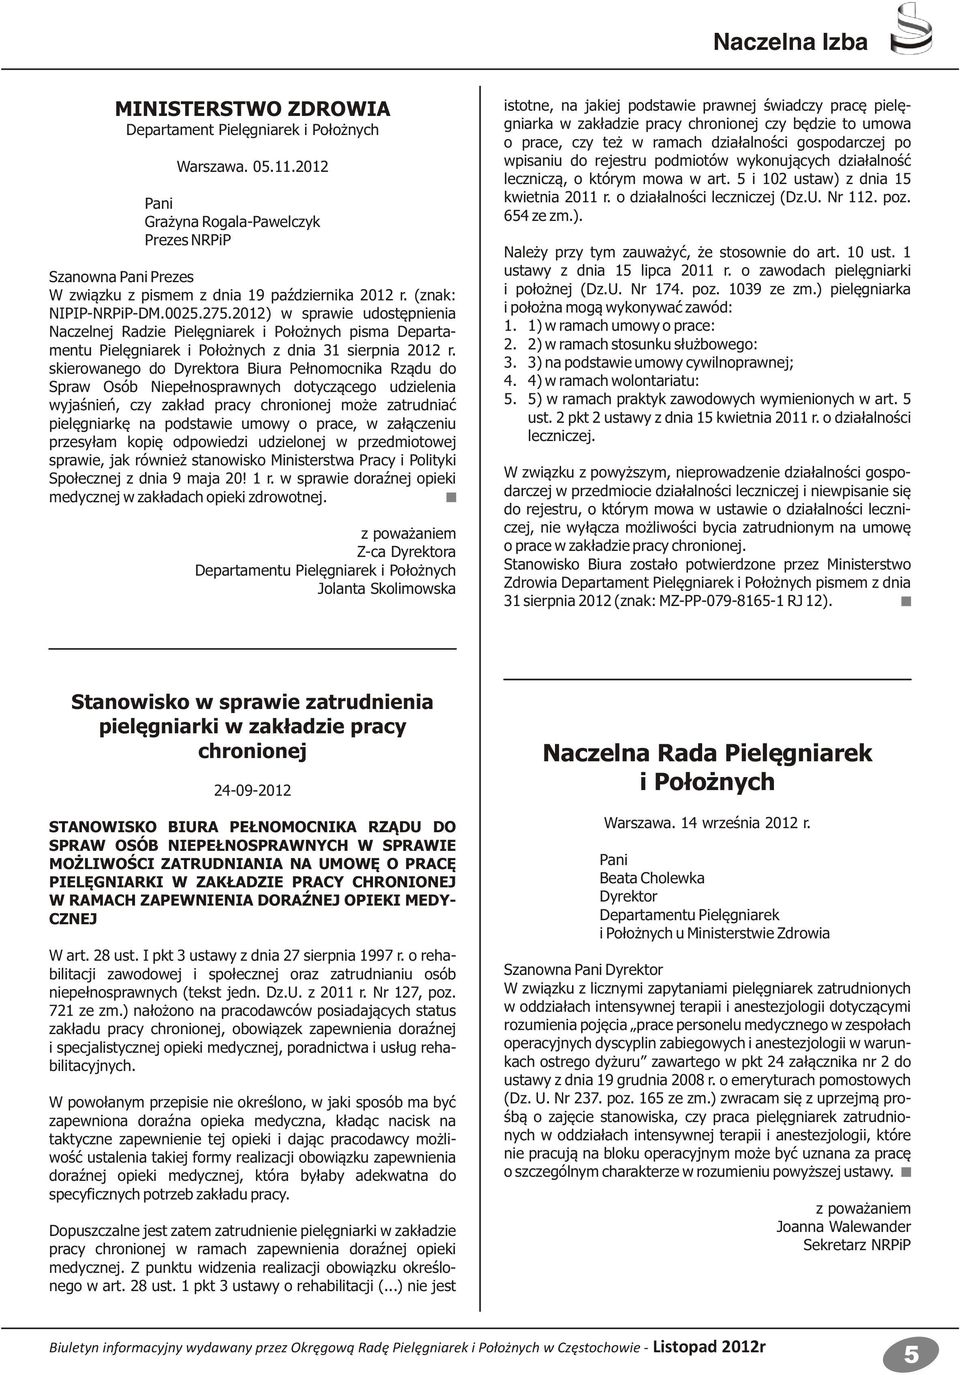 2012) w sprawie udostępnienia Naczelnej Radzie Pielęgniarek i Położnych pisma Departamentu Pielęgniarek i Położnych z dnia 31 sierpnia 2012 r.